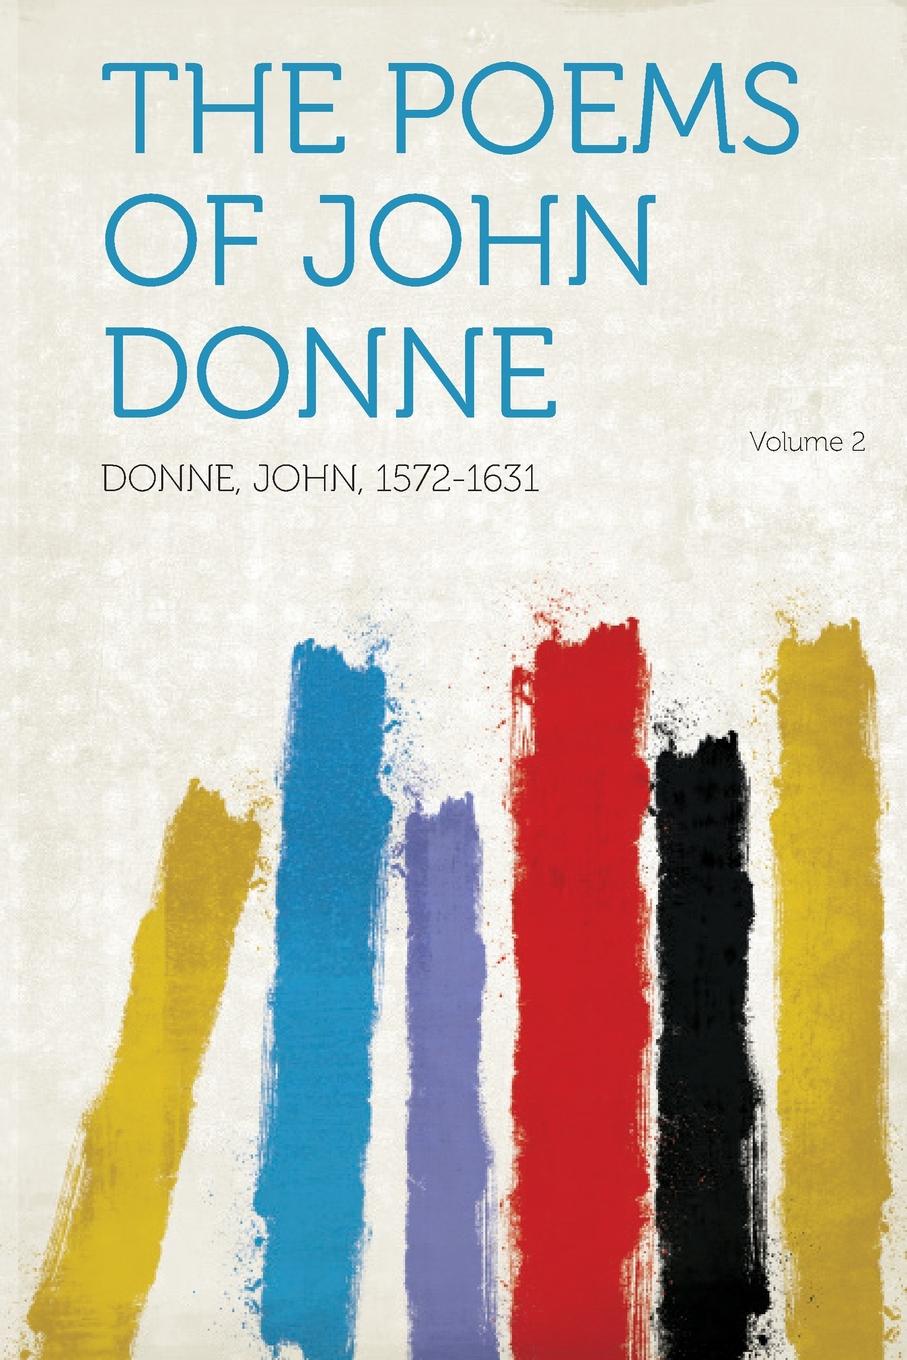 The Poems of John Donne Volume 2